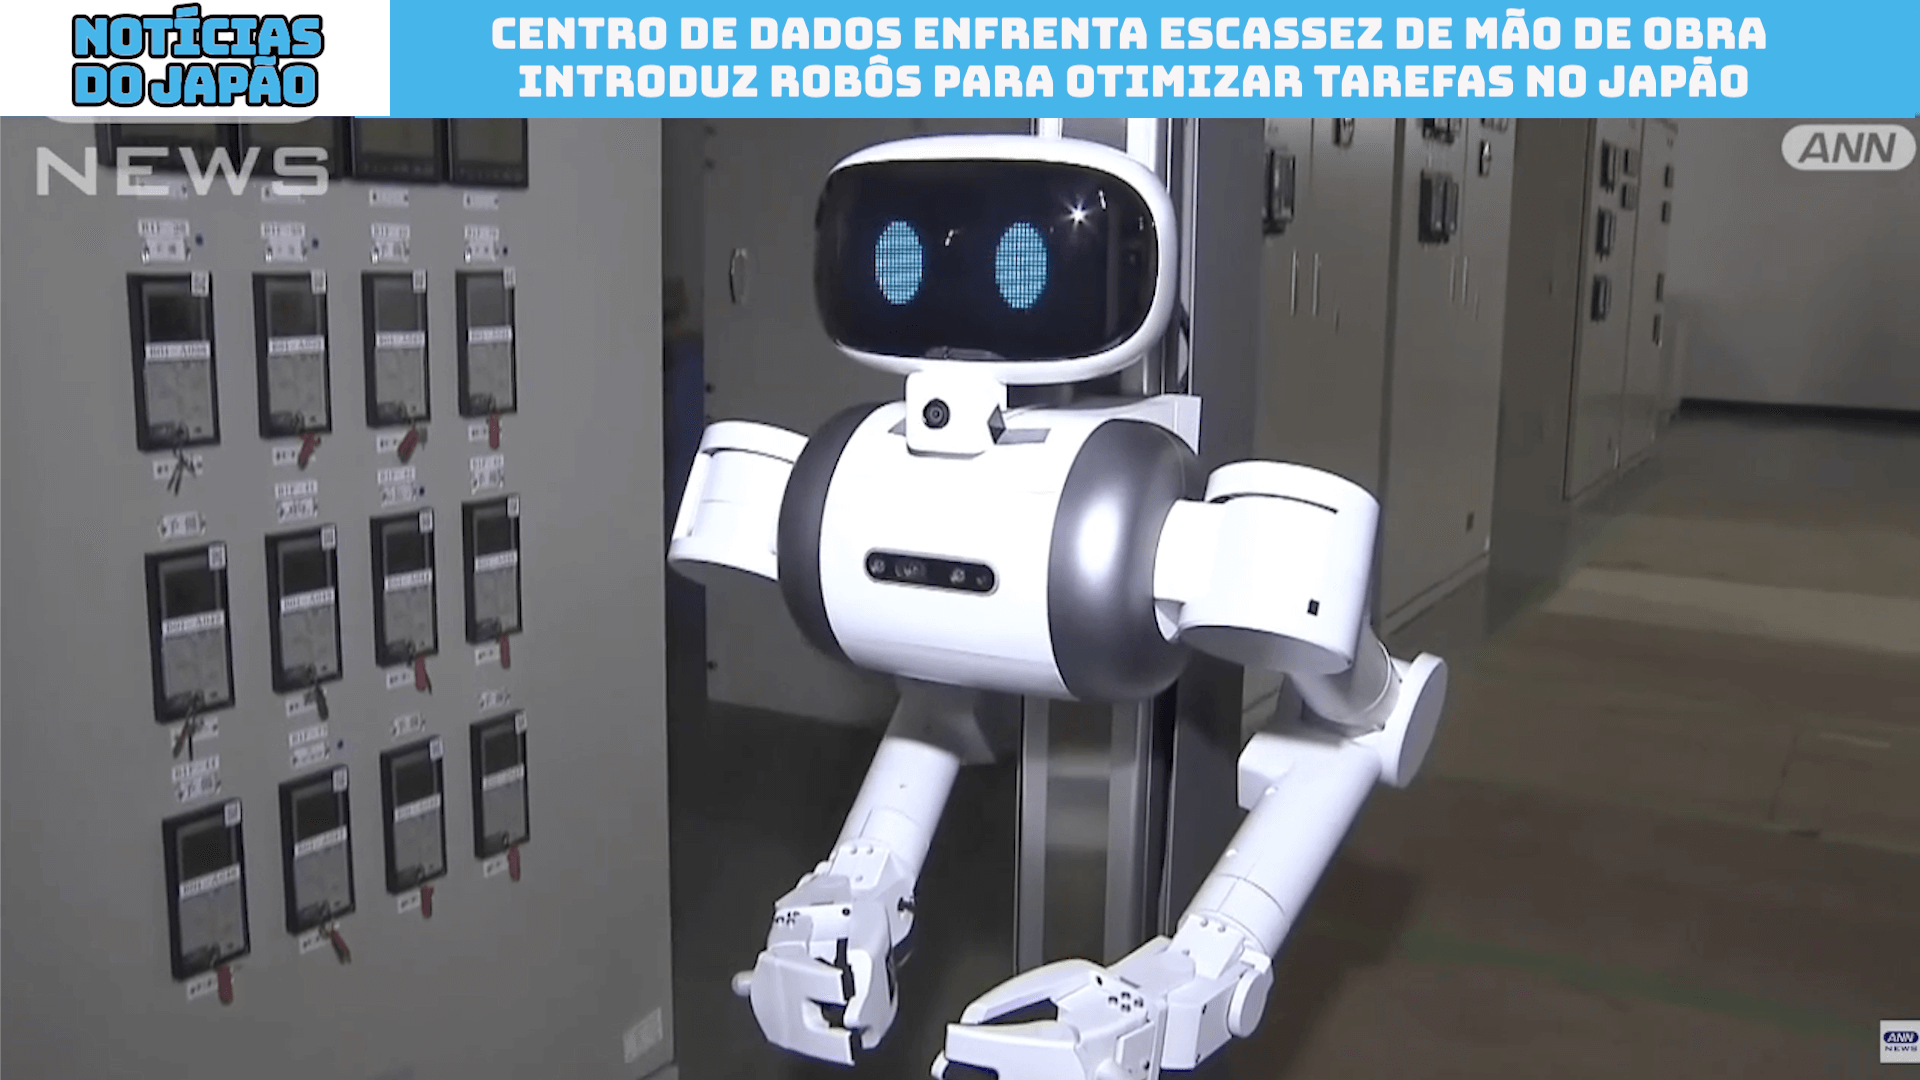 Centro de dados enfrenta escassez de mão de obra introduz robôs para otimizar tarefas no Japão 